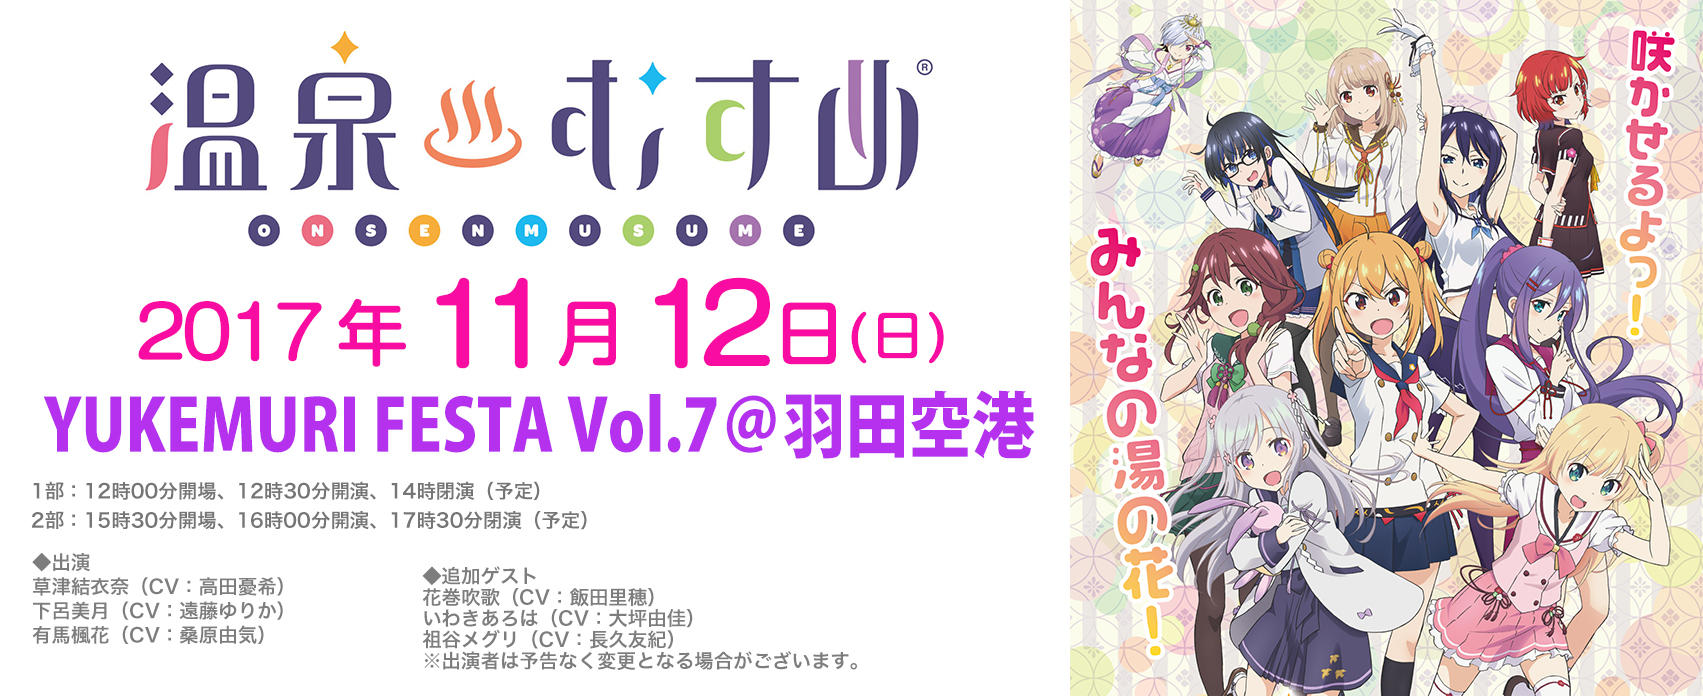 Yukemuri Festa Vol 7 羽田空港 東京のイベントスペース Tiat Sky Hall